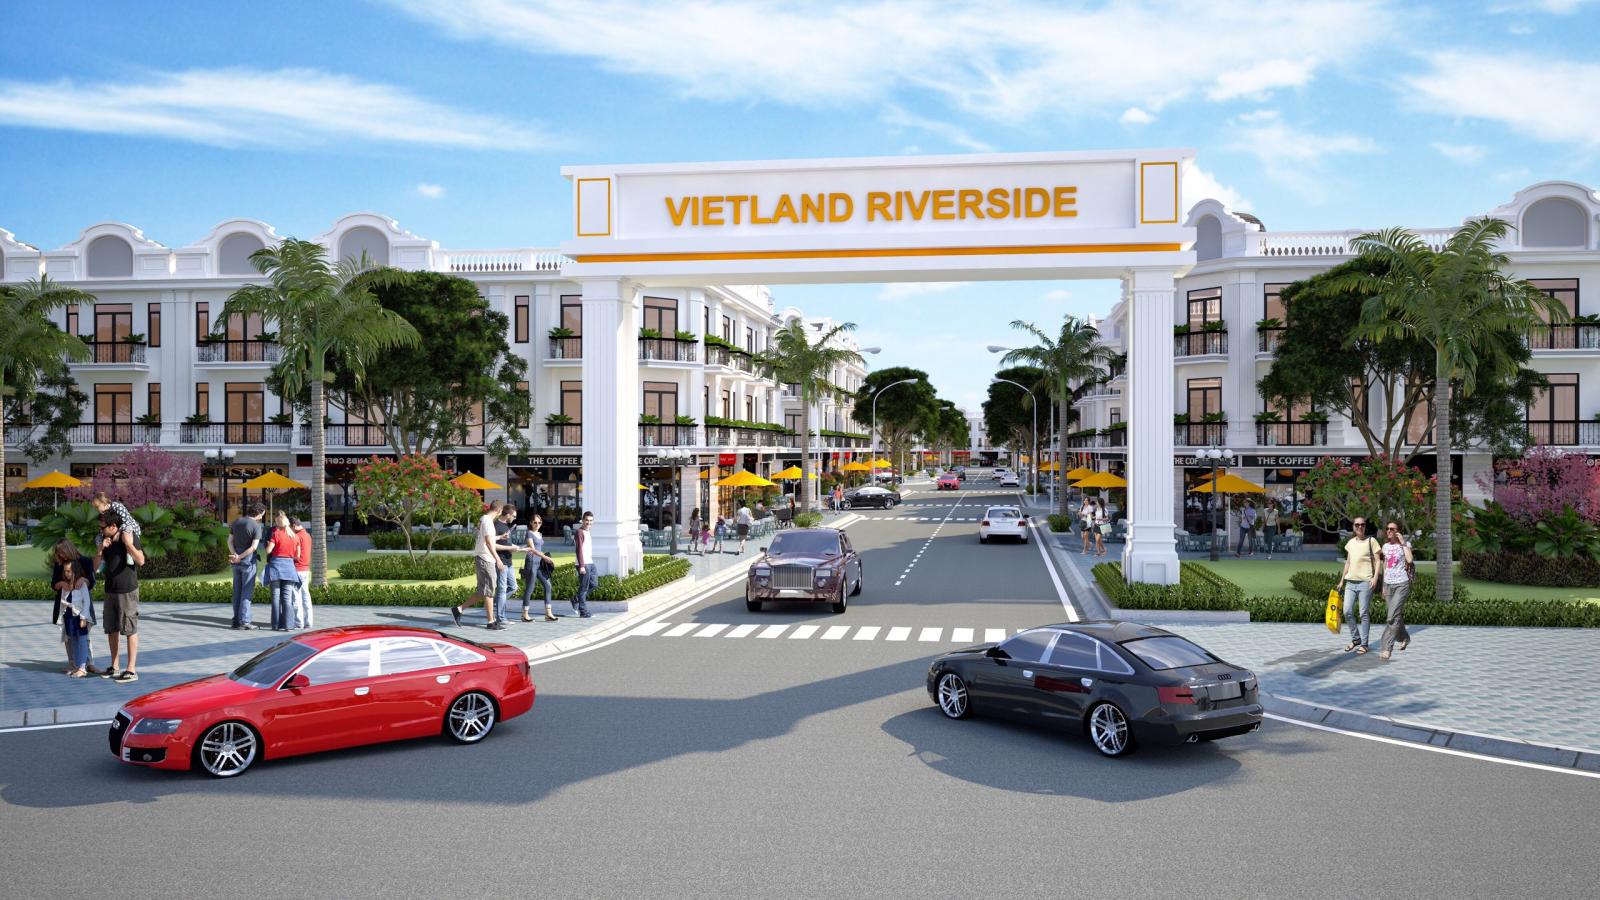 Cổng chào dự án Vietland Riverside